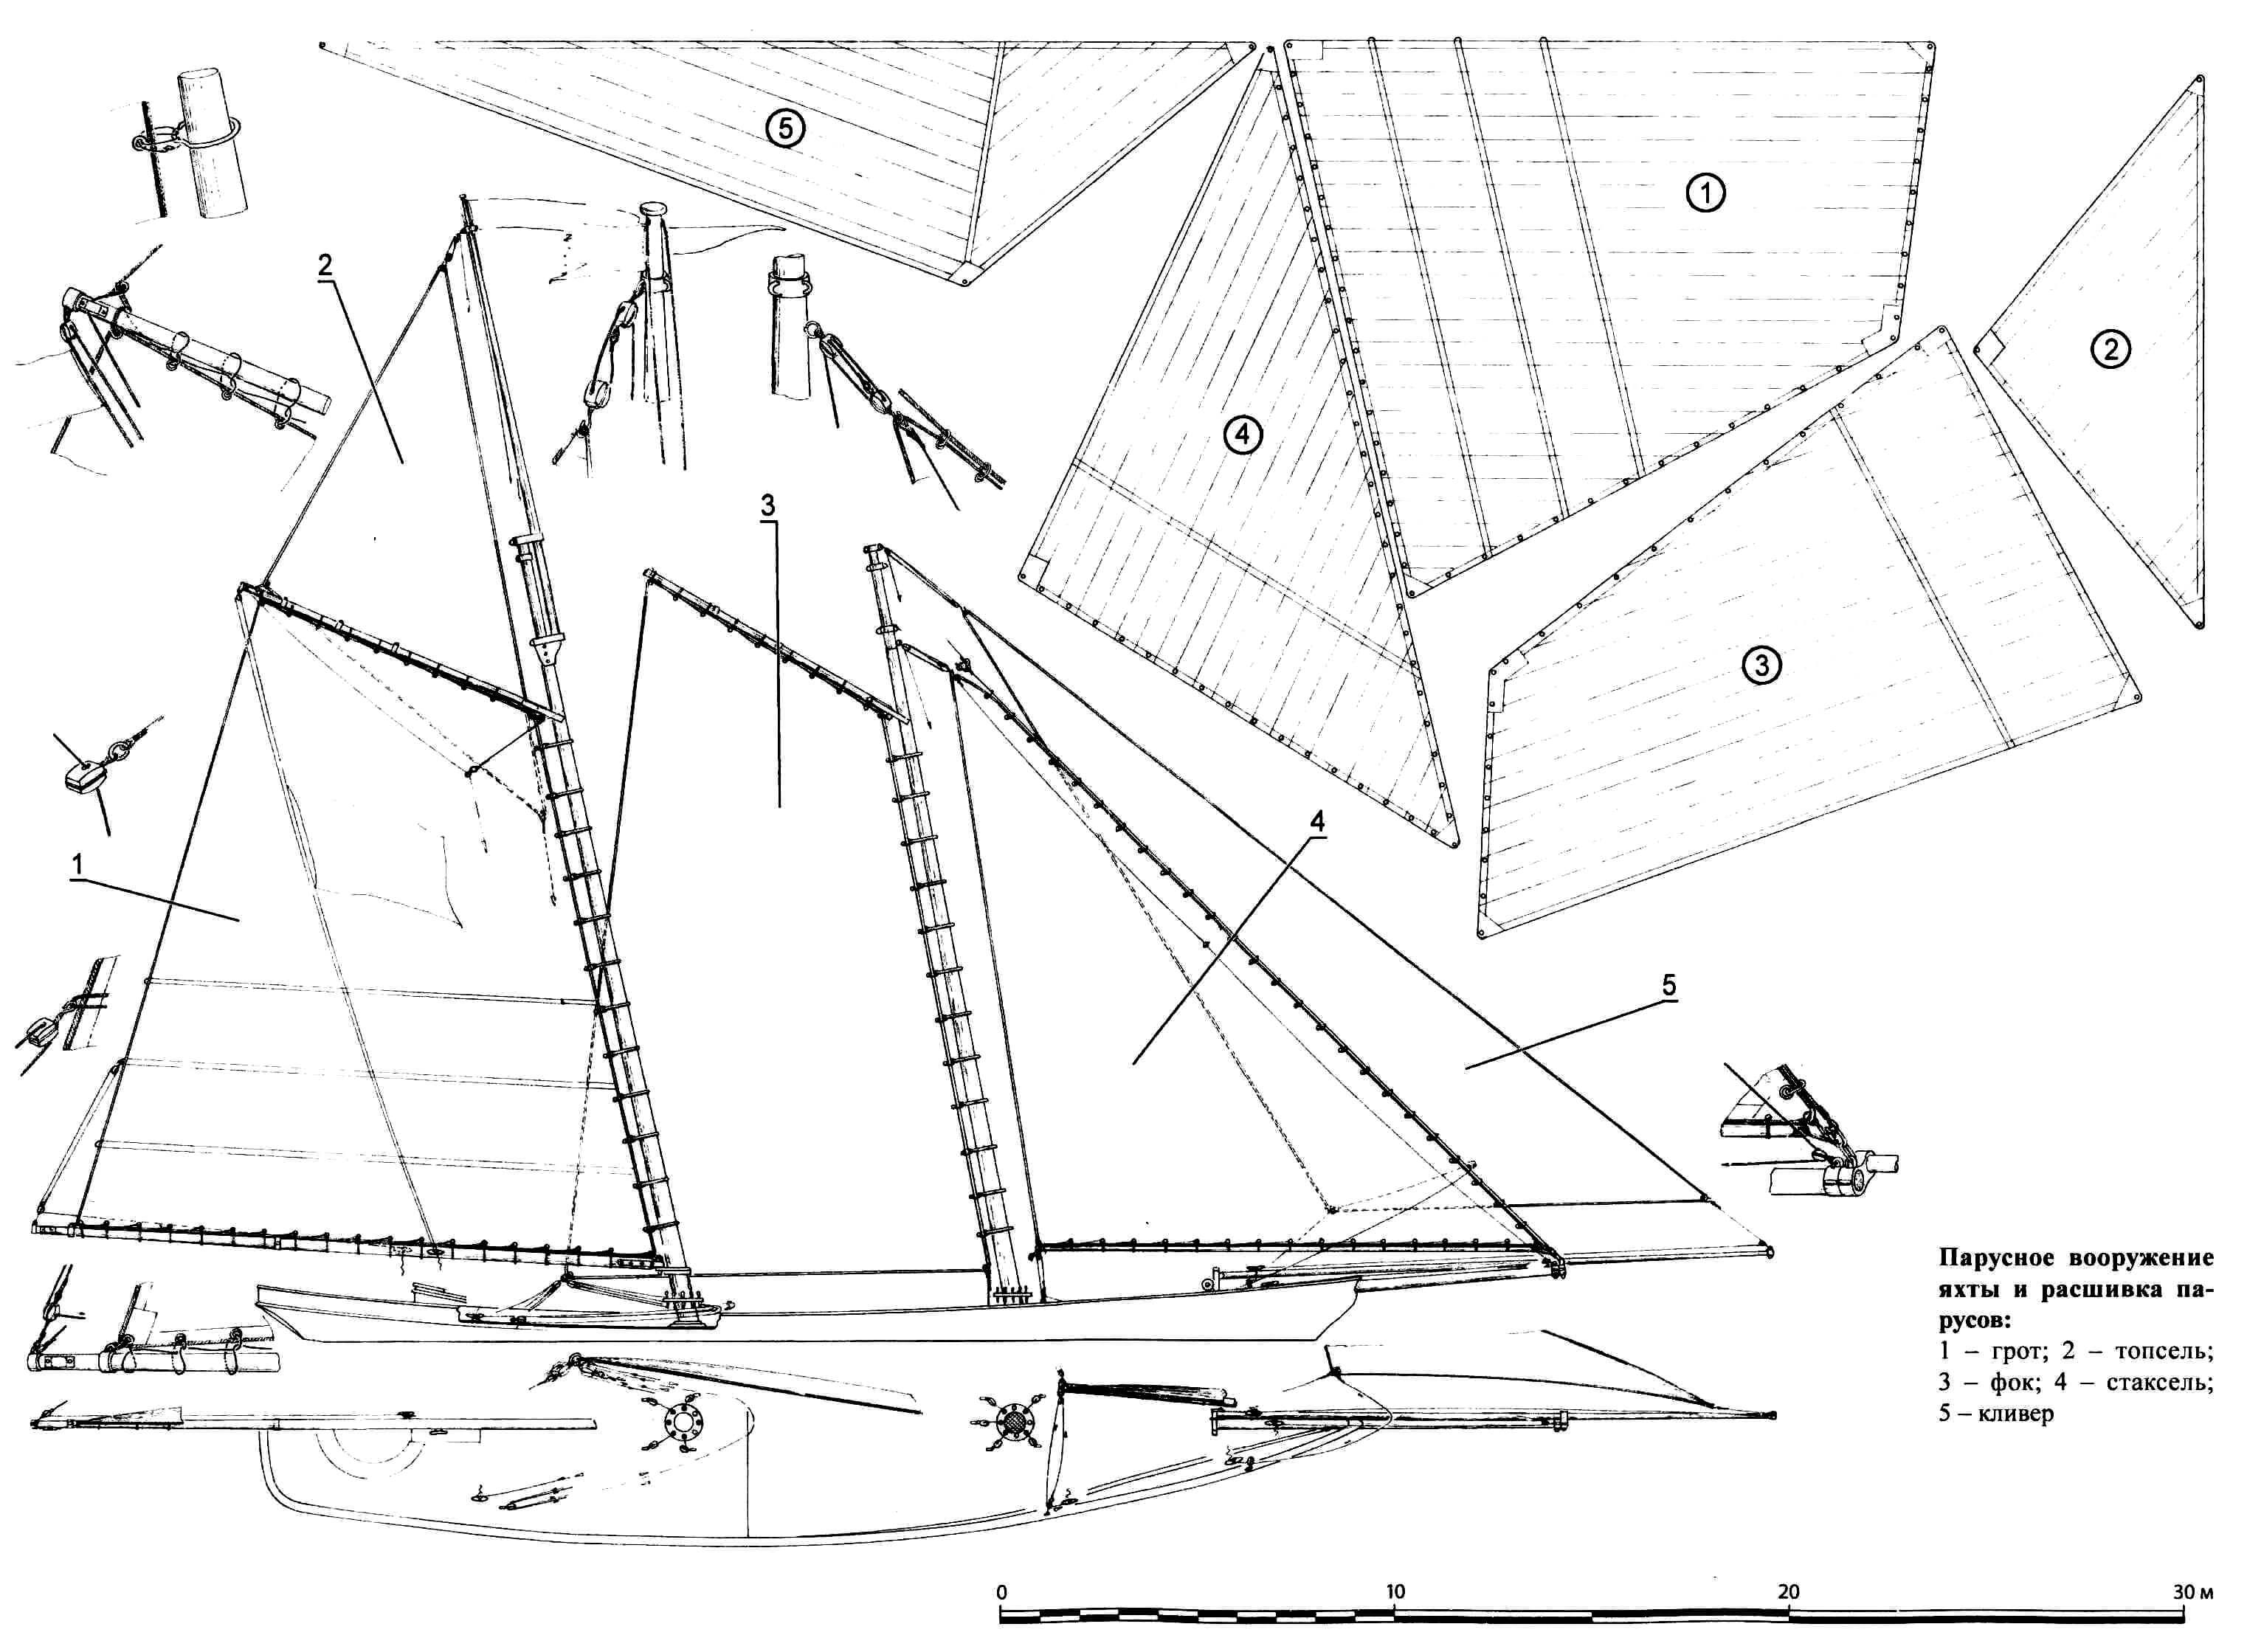 Парусное вооружение яхты и расшивка парусов: 1 - грот; 2 - топсель; 3 - фок; 4 - стаксель; 5 - кливер